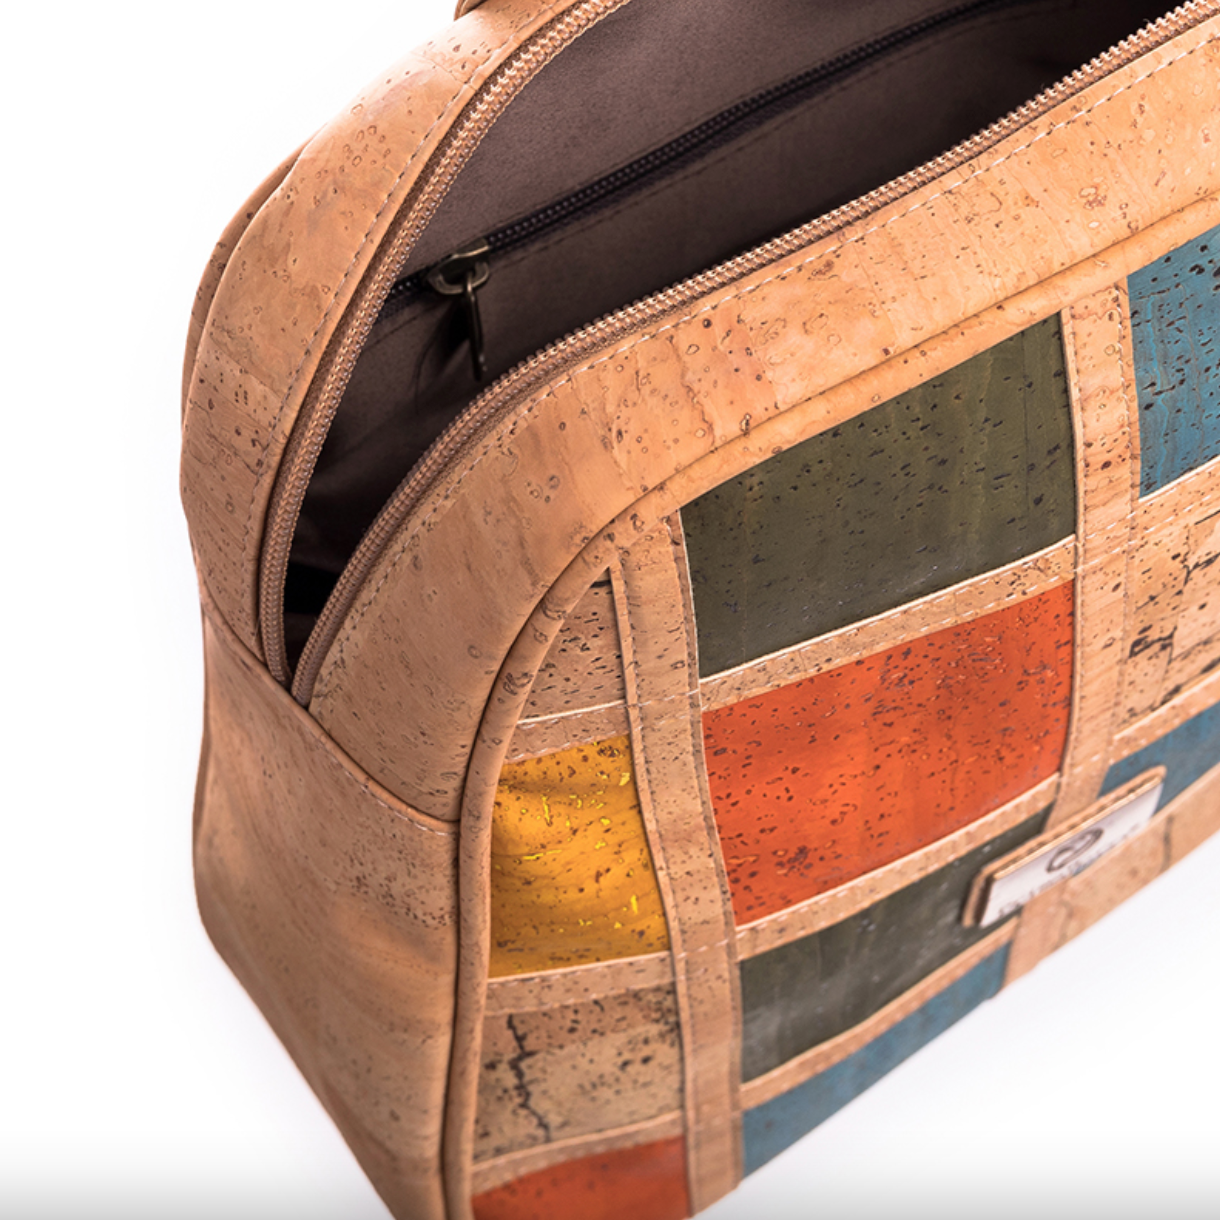 Diversity Cork Umhängetasche: Nachhaltige und stilvolle Tasche aus hochwertigem portugiesischem Kork